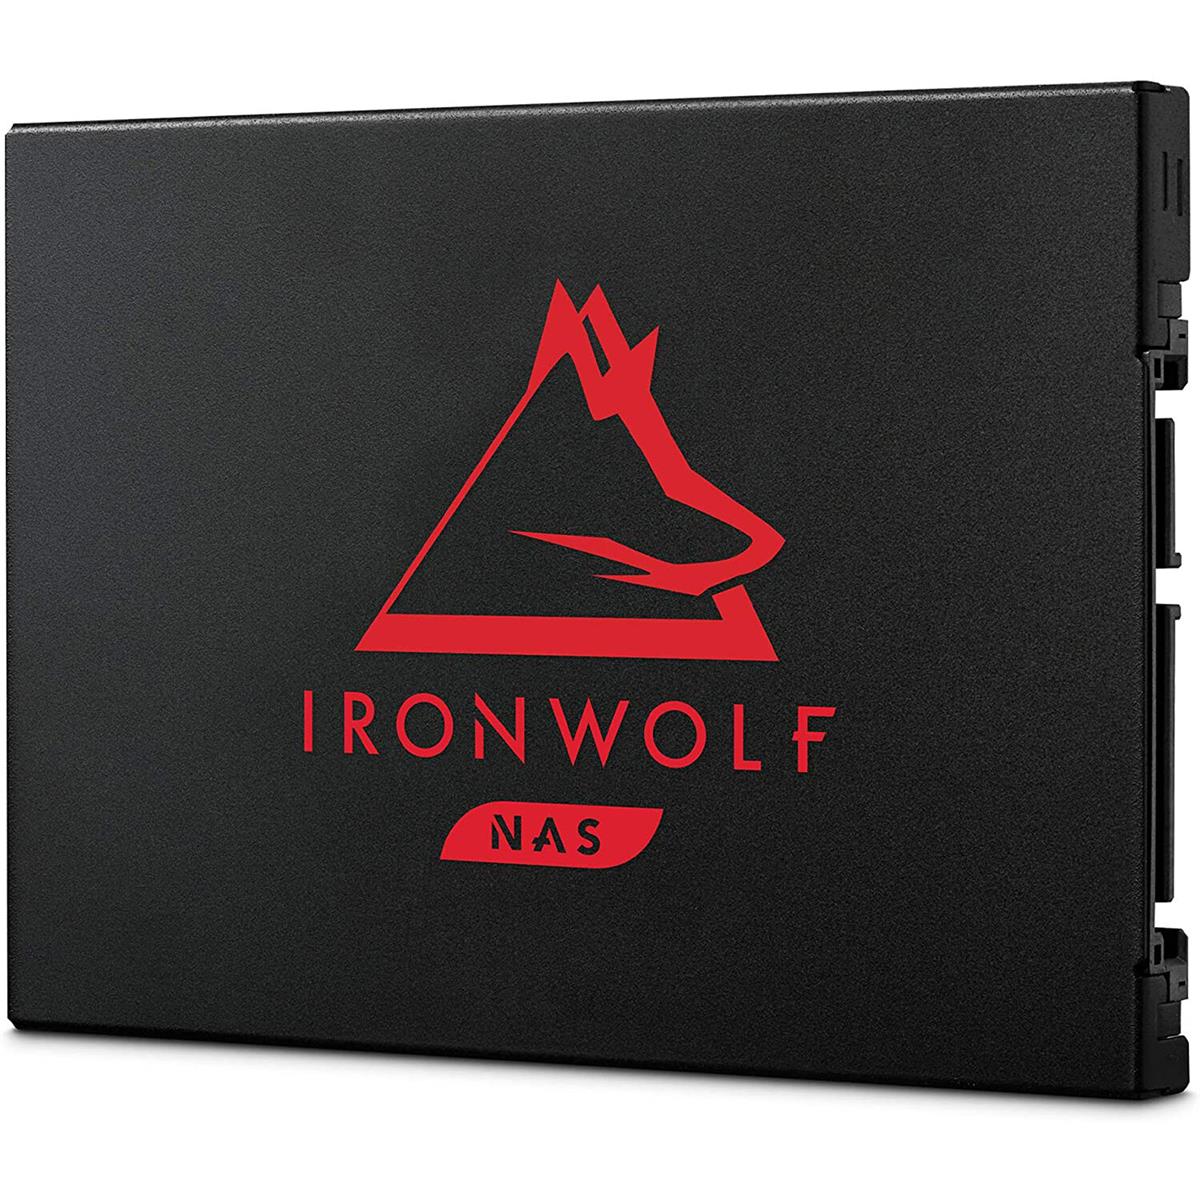 

Seagate IronWolf 125 4TB SATA III 2.5" Internal SSD